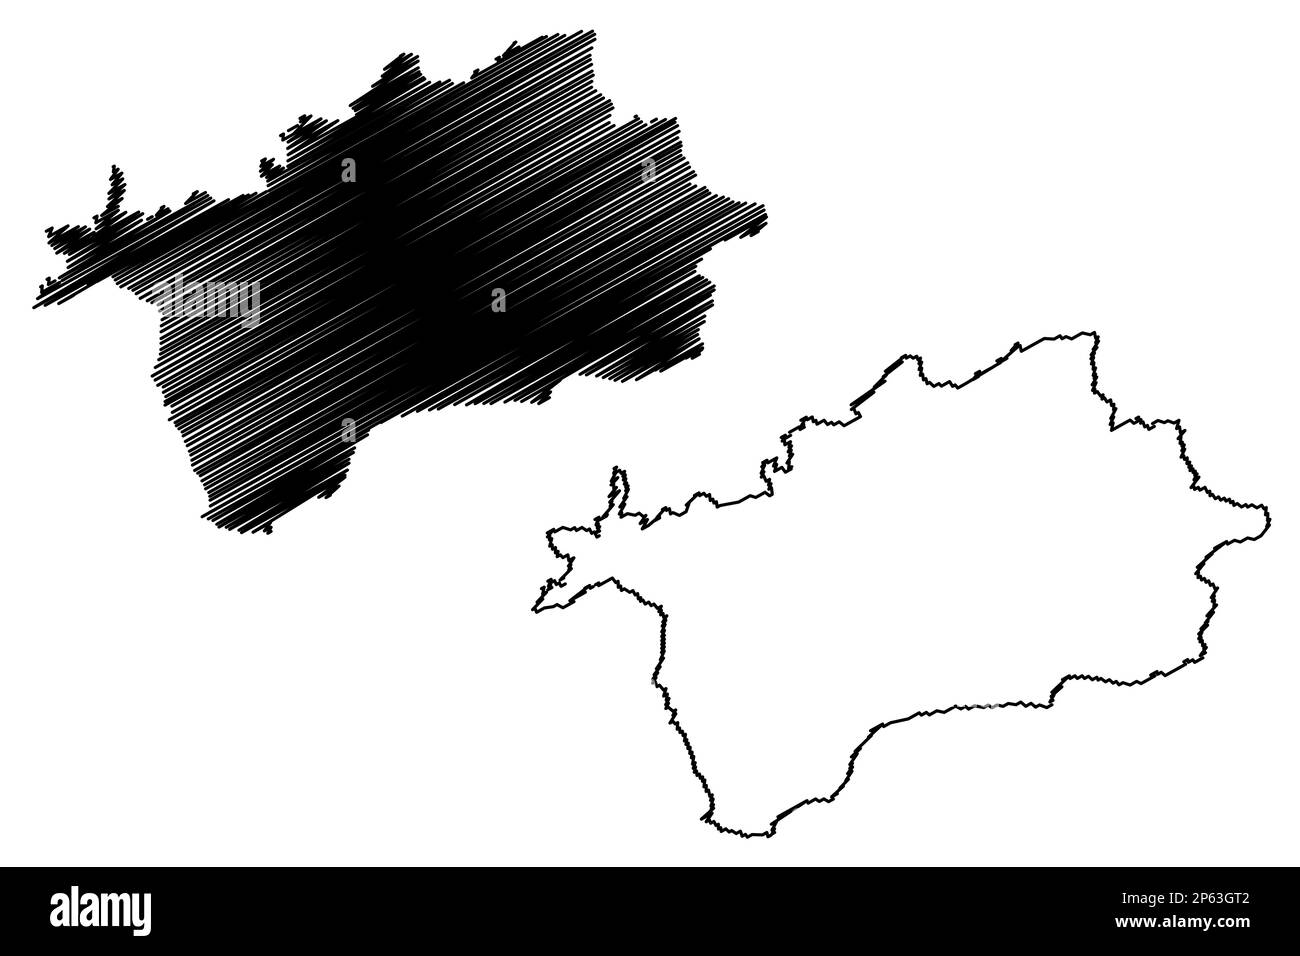 Vettore mappa del distretto non metropolitano del Devon orientale (Regno Unito di Gran Bretagna e Irlanda del Nord, contea cerimoniale Devon o Devonshire, Inghilterra) Illustrazione Vettoriale